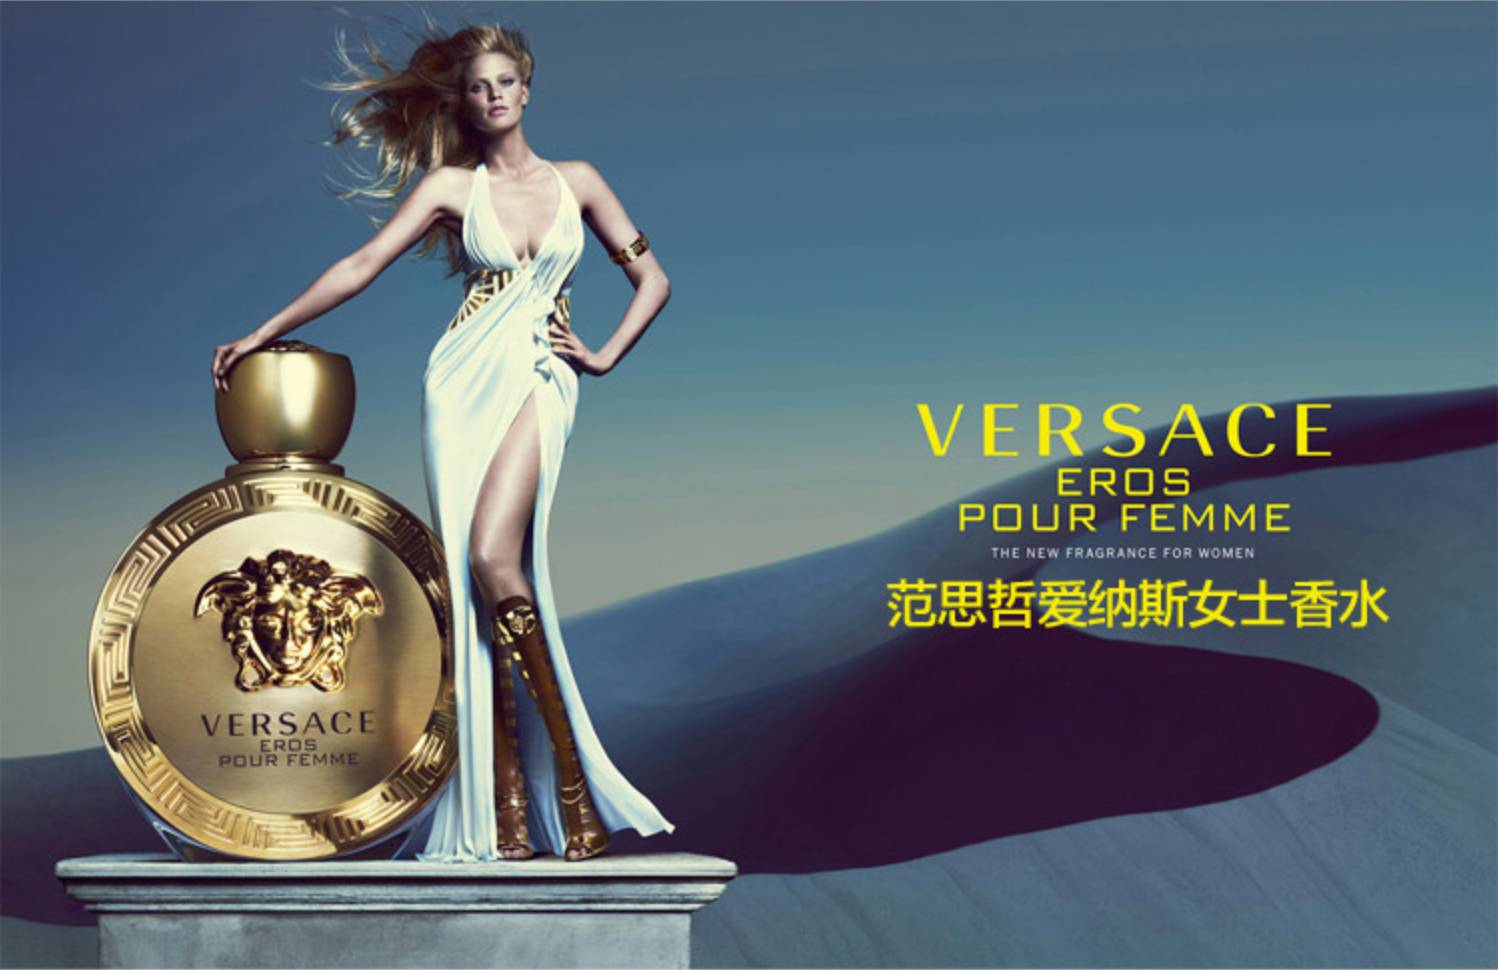 Versace范思哲的品牌故事 - 深圳市喜草品牌创意设计有限公司